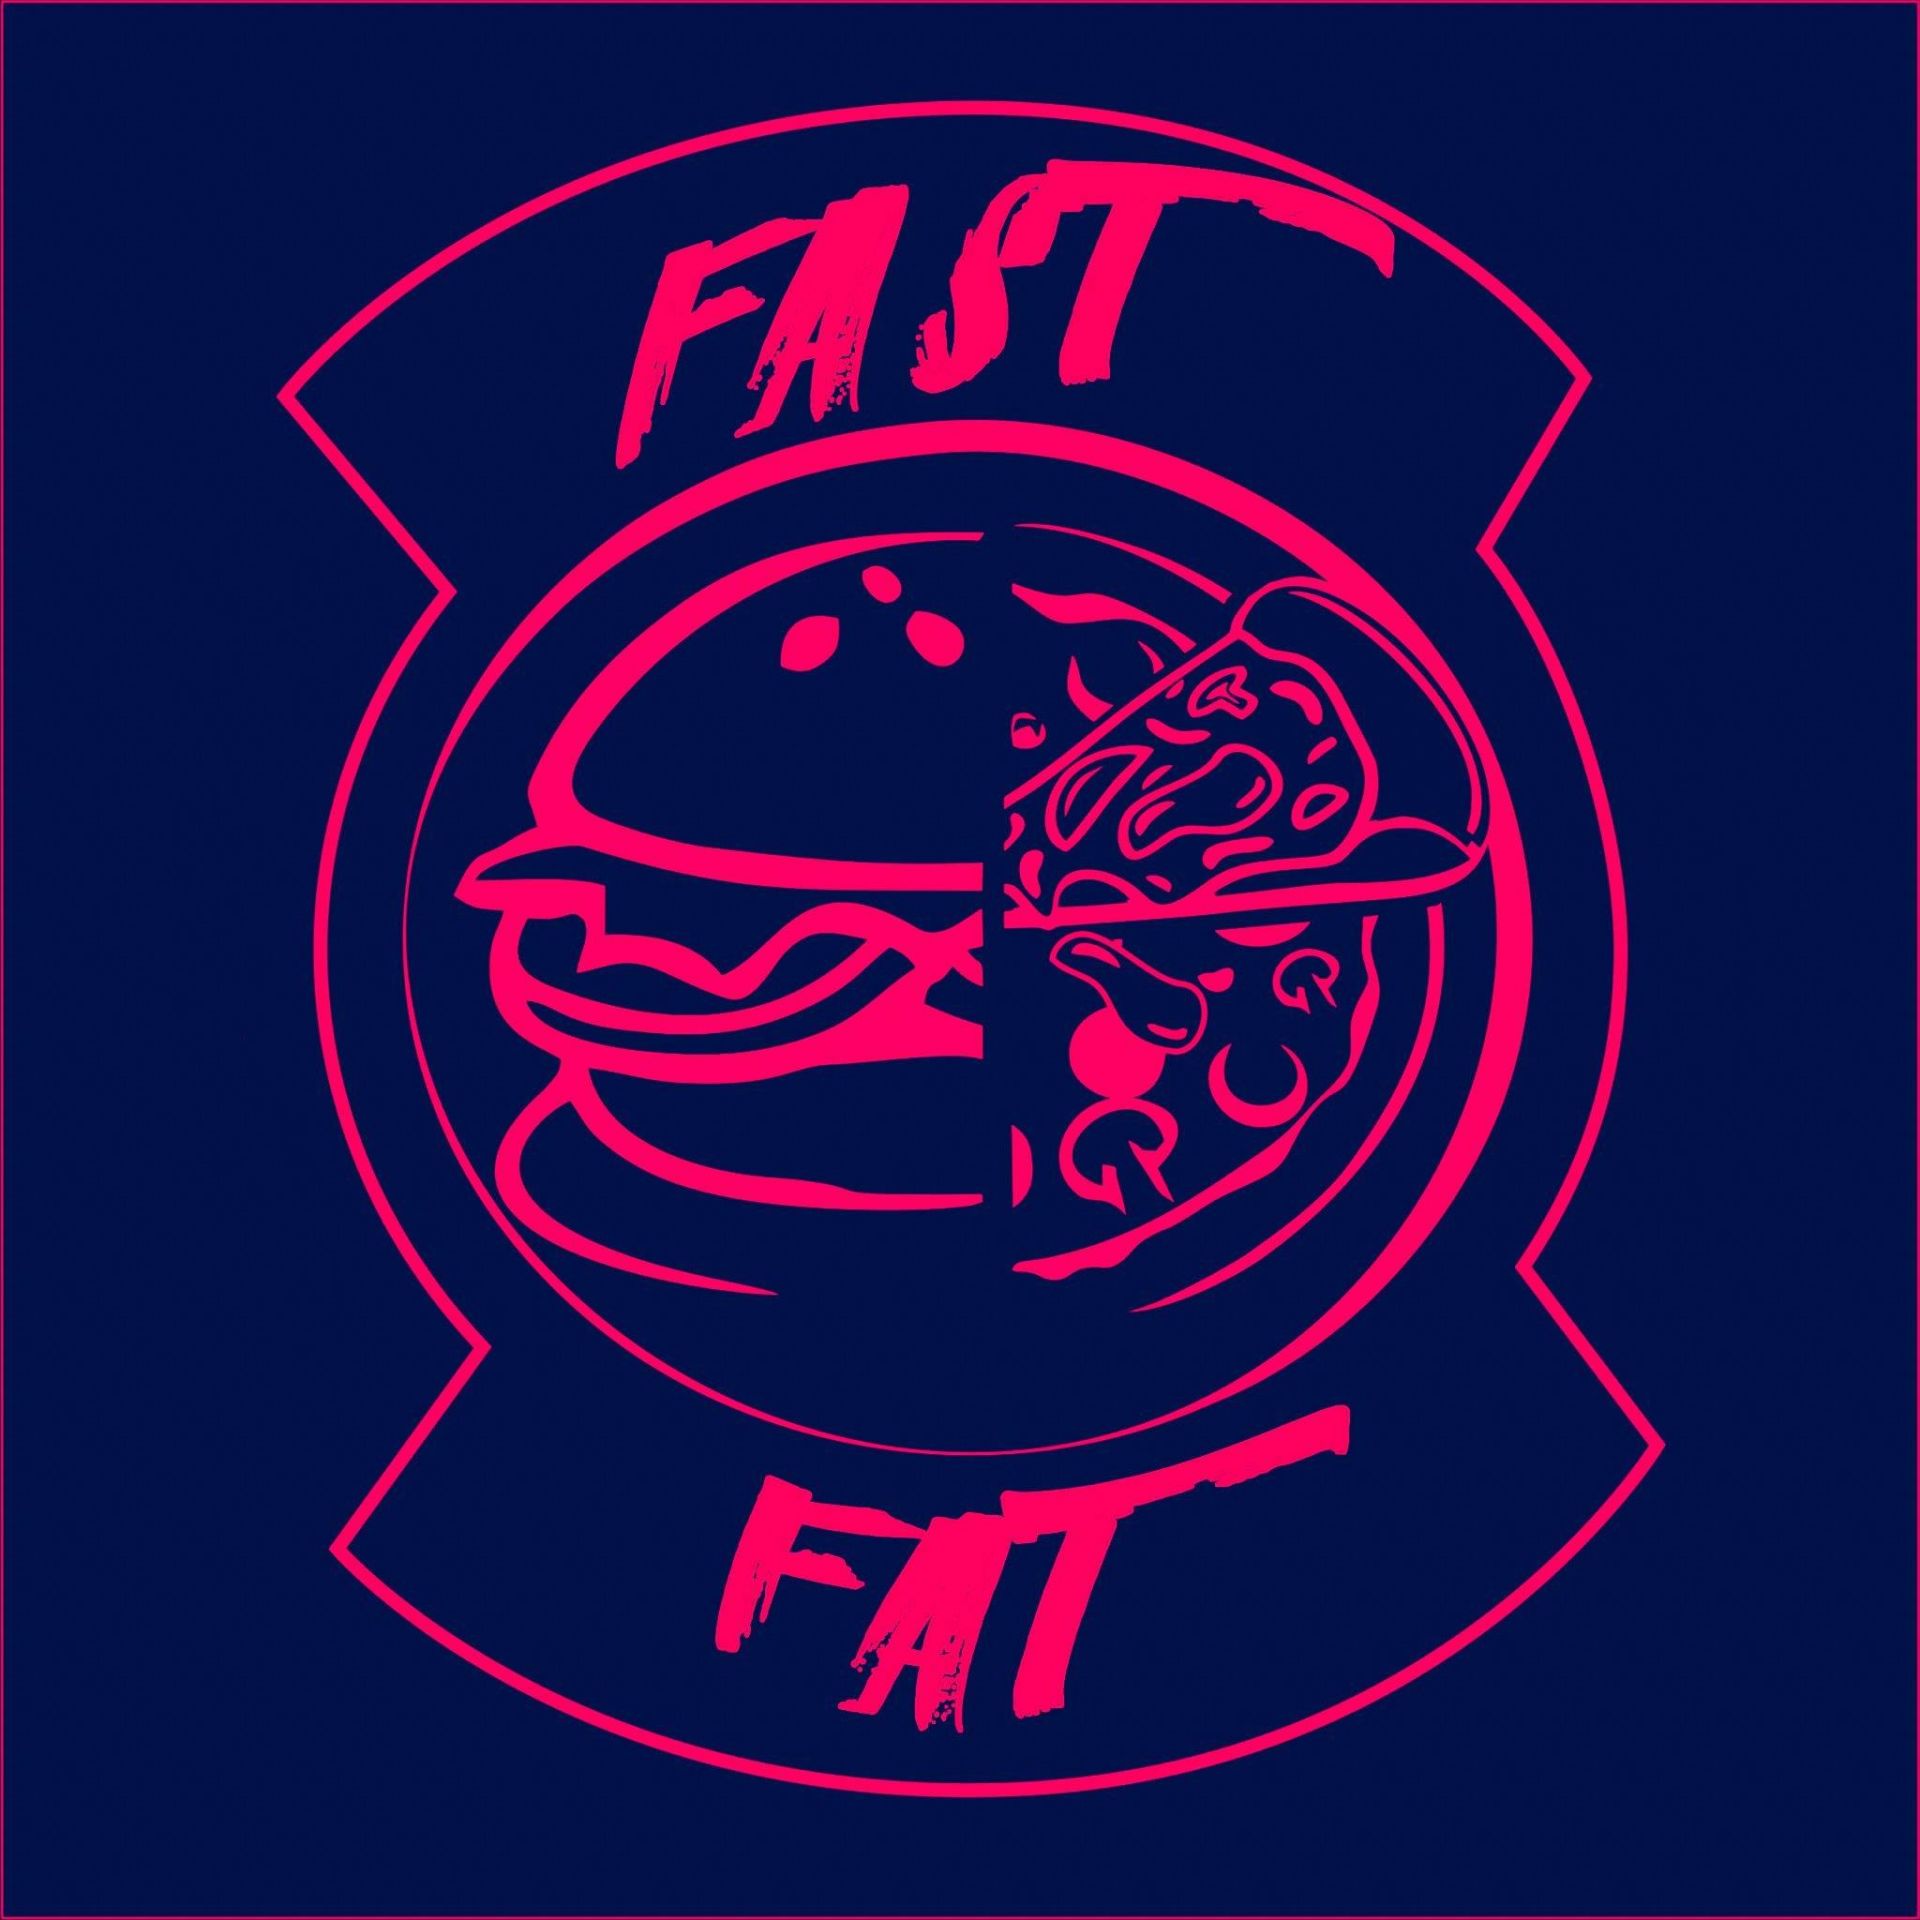 zespół FAST FAT